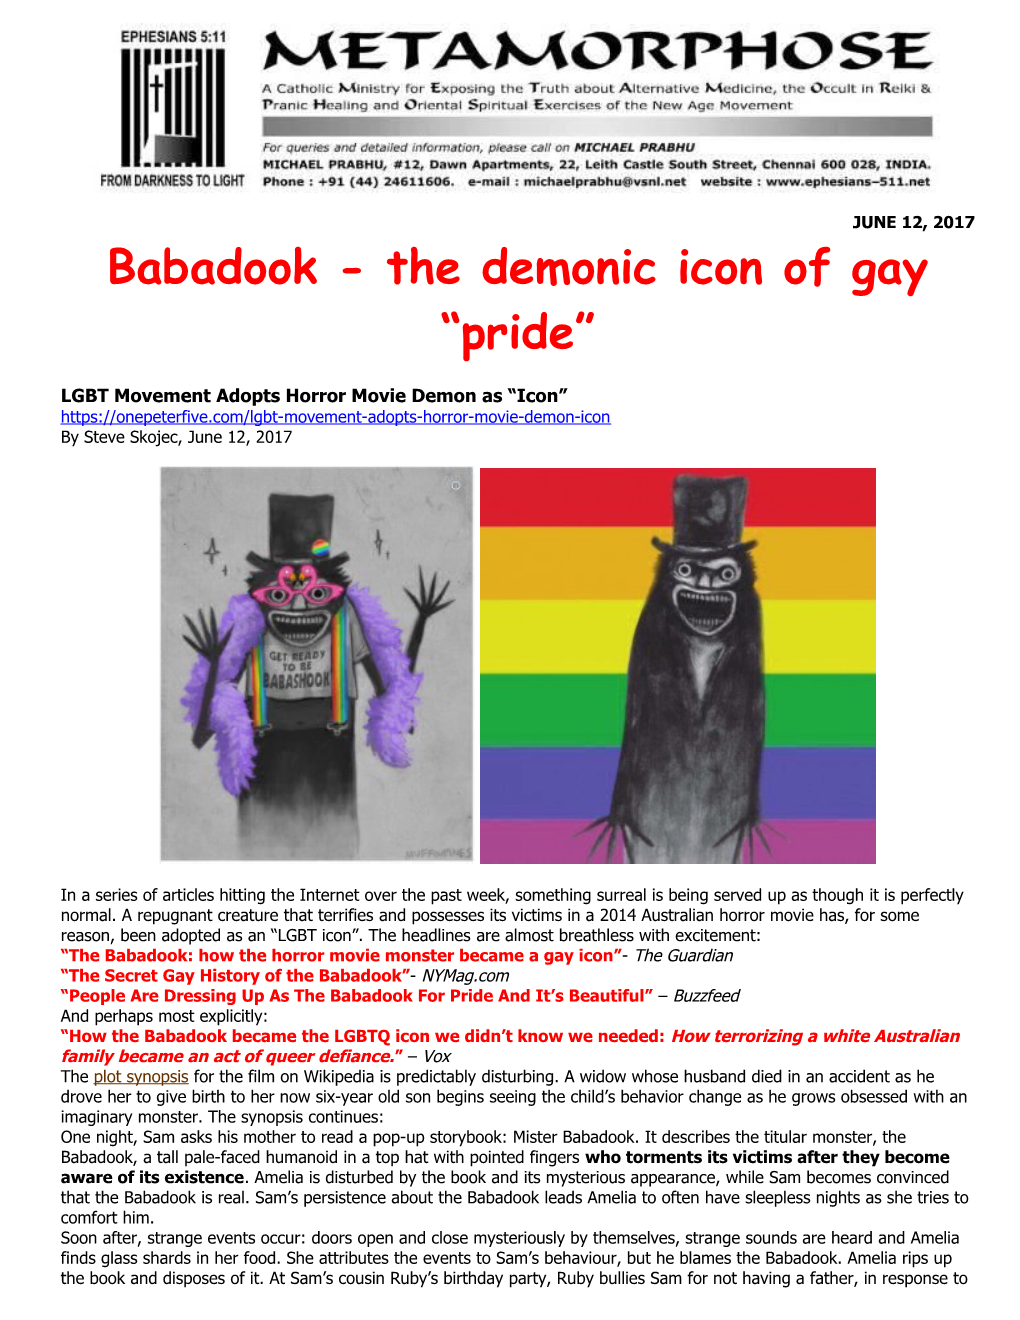 Babadook - the Demonicicon of Gay Pride